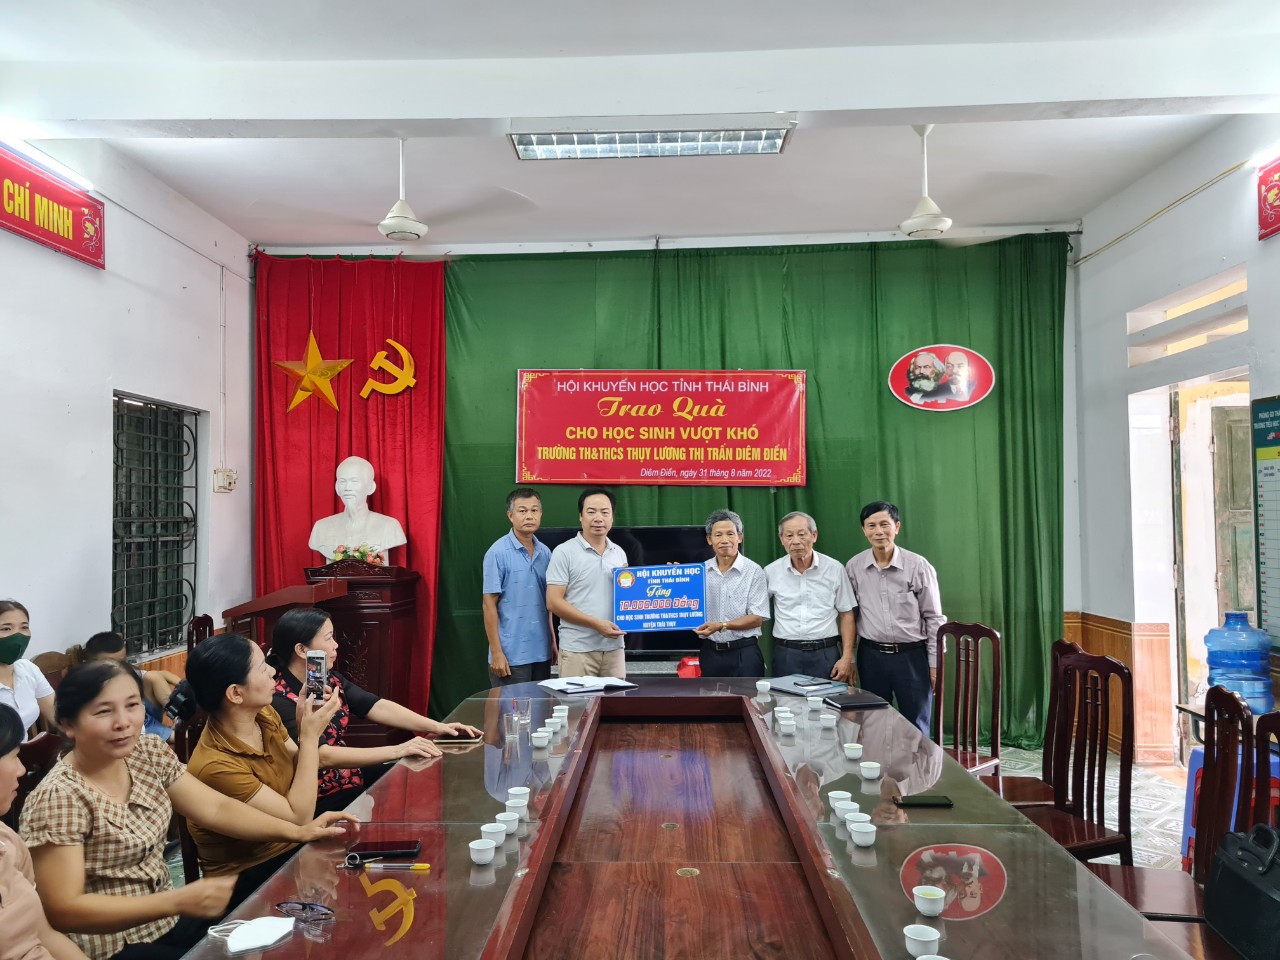 Trao quà cho học sinh vượt khó trường TH&THCS Thụy Lương thị trấn Diêm Điền - 1